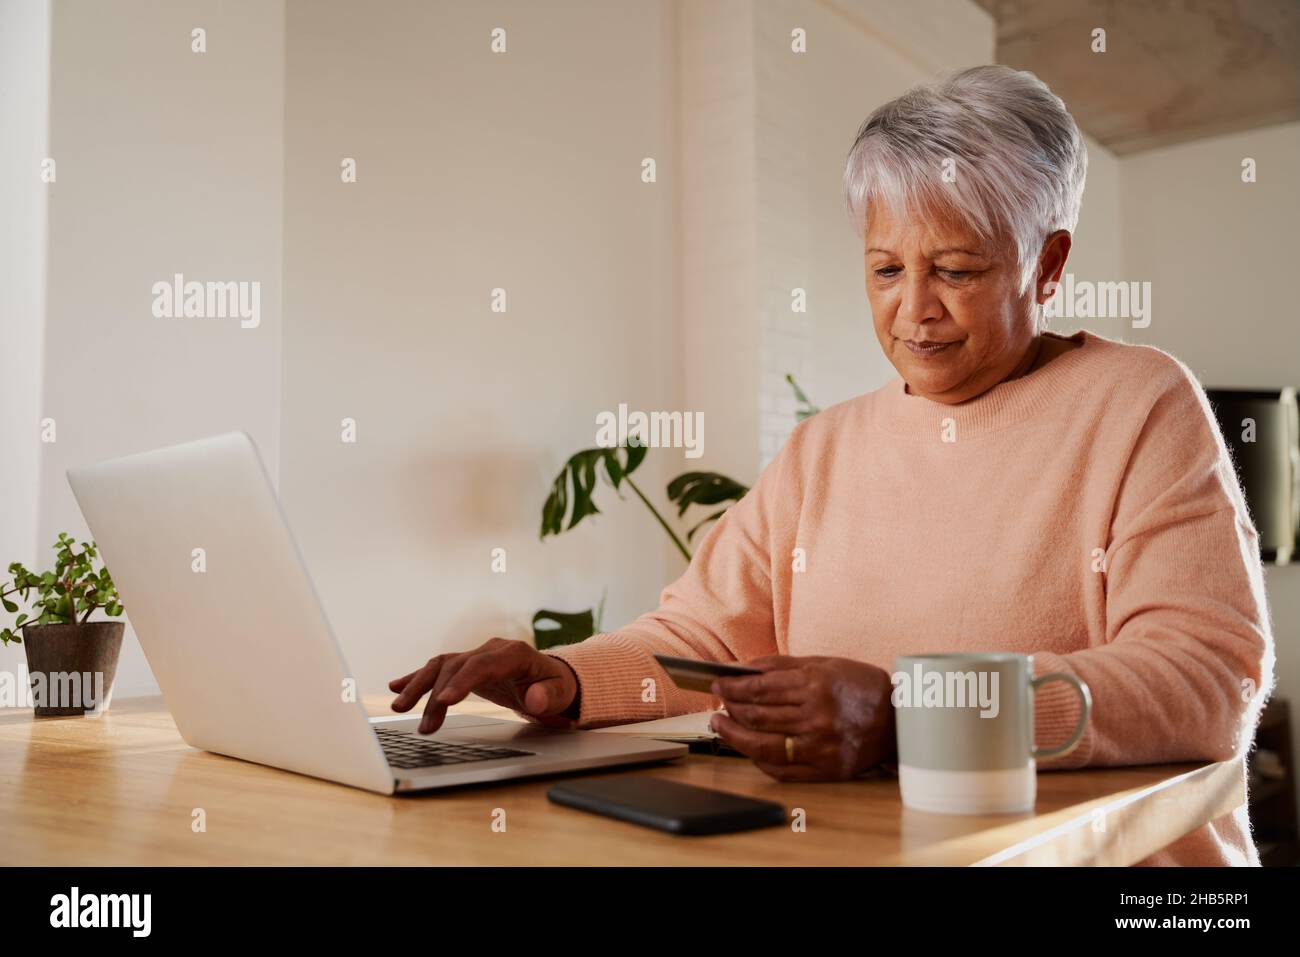 Une femme âgée de plusieurs ethnies se fait un plaisir de taper les coordonnées bancaires pour effectuer un paiement en ligne sur ordinateur portable, au comptoir de la cuisine. Banque D'Images